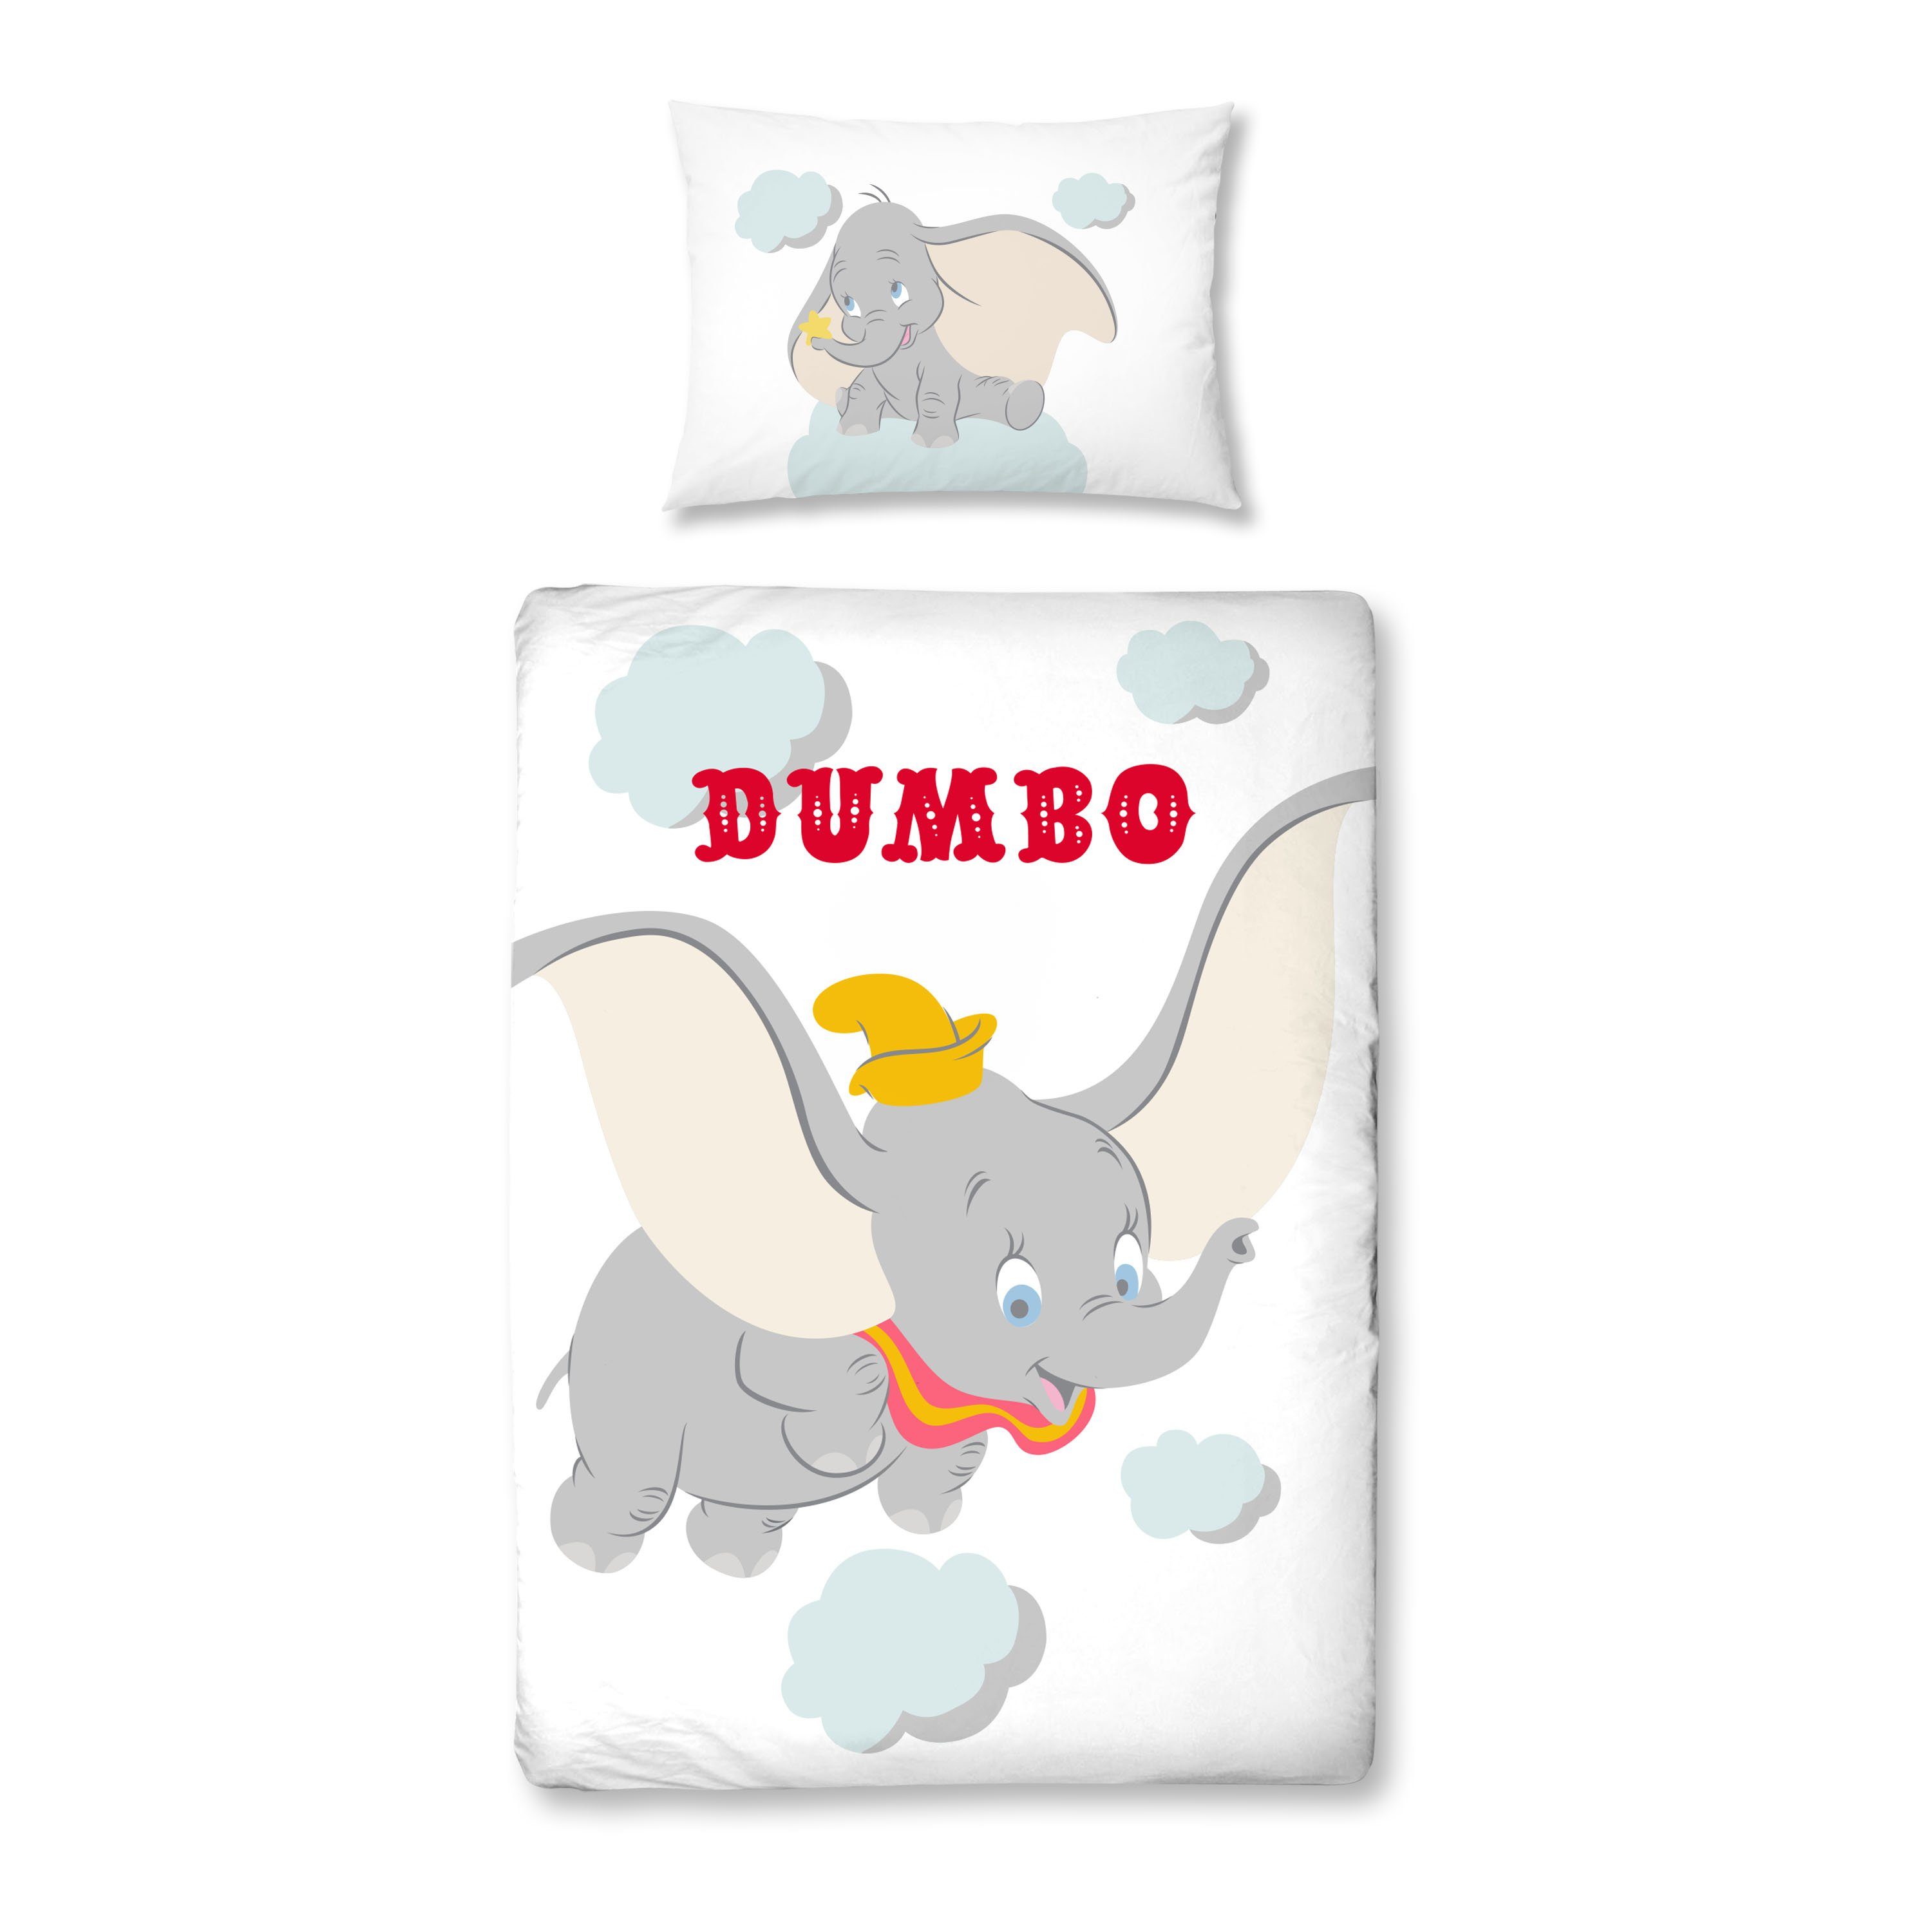 Babybettwäsche Dumbo 100x135 + 40x60 cm 2 tlg., 100 % Baumwolle in  Renforcé, MTOnlinehandel, Renforcé, 2 teilig, Disney's Dumbo Elefant  Kinderbettwäsche